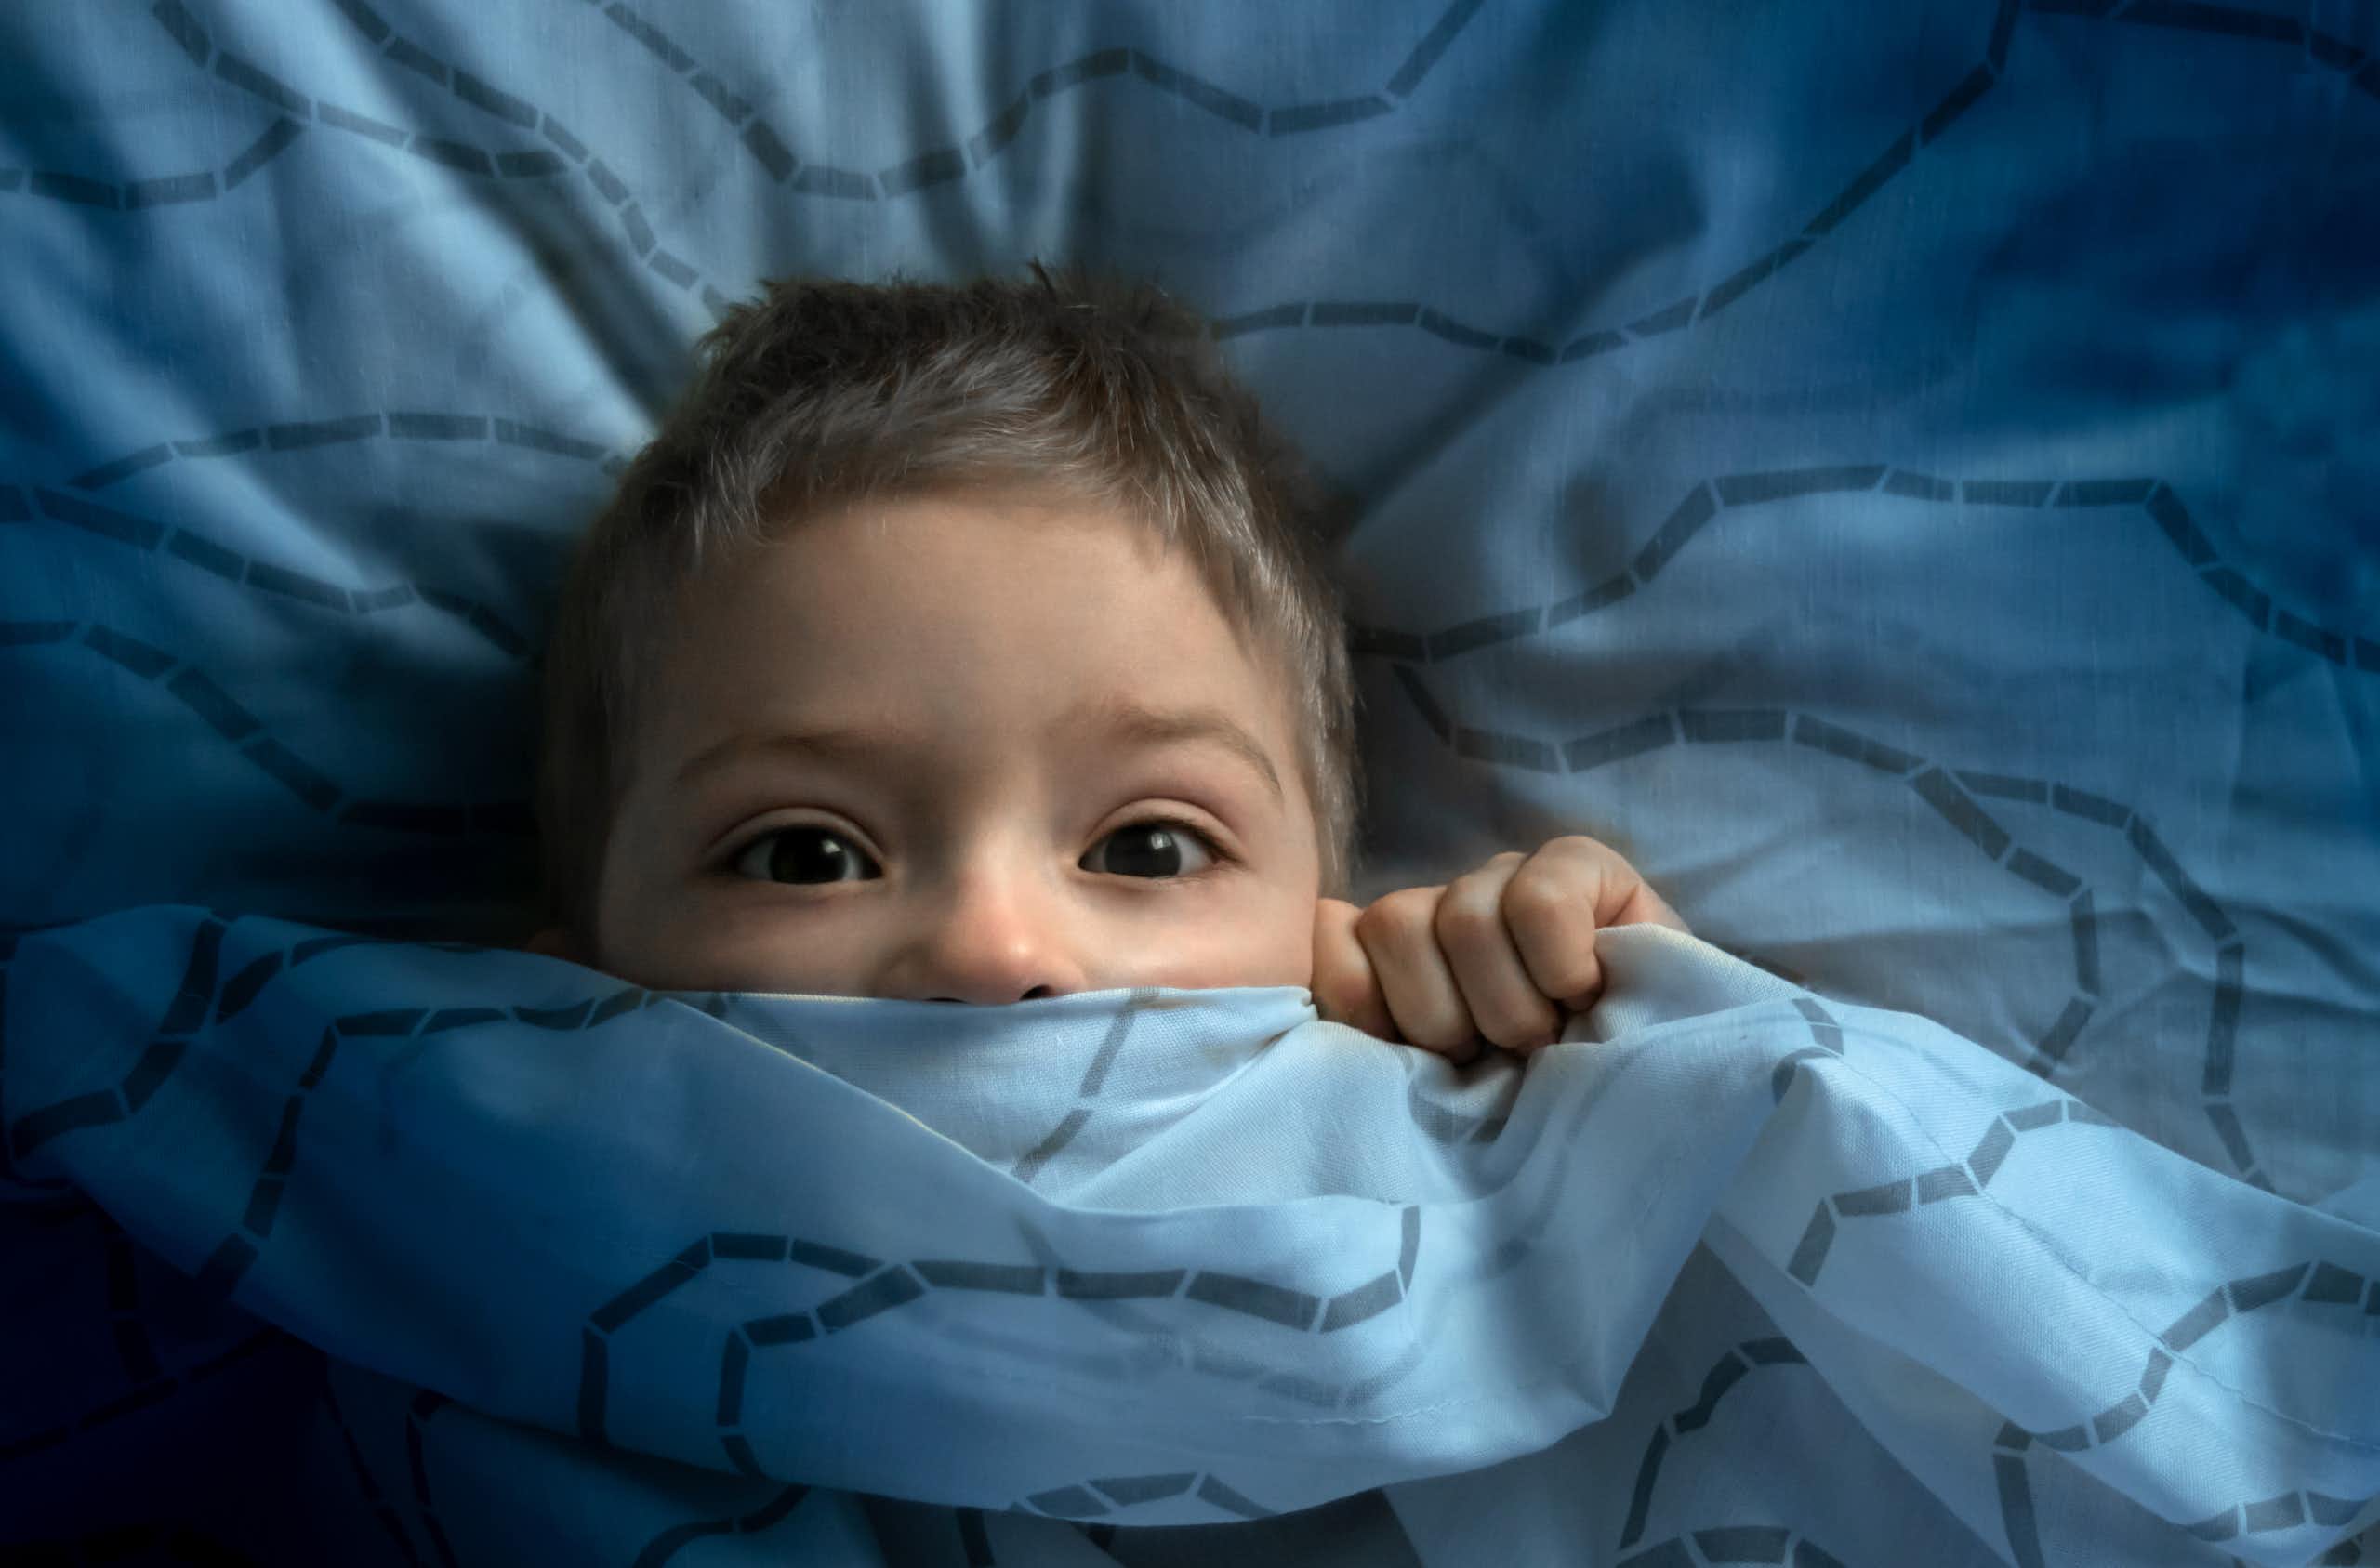 ¿Cómo afrontar los miedos nocturnos en la infancia?